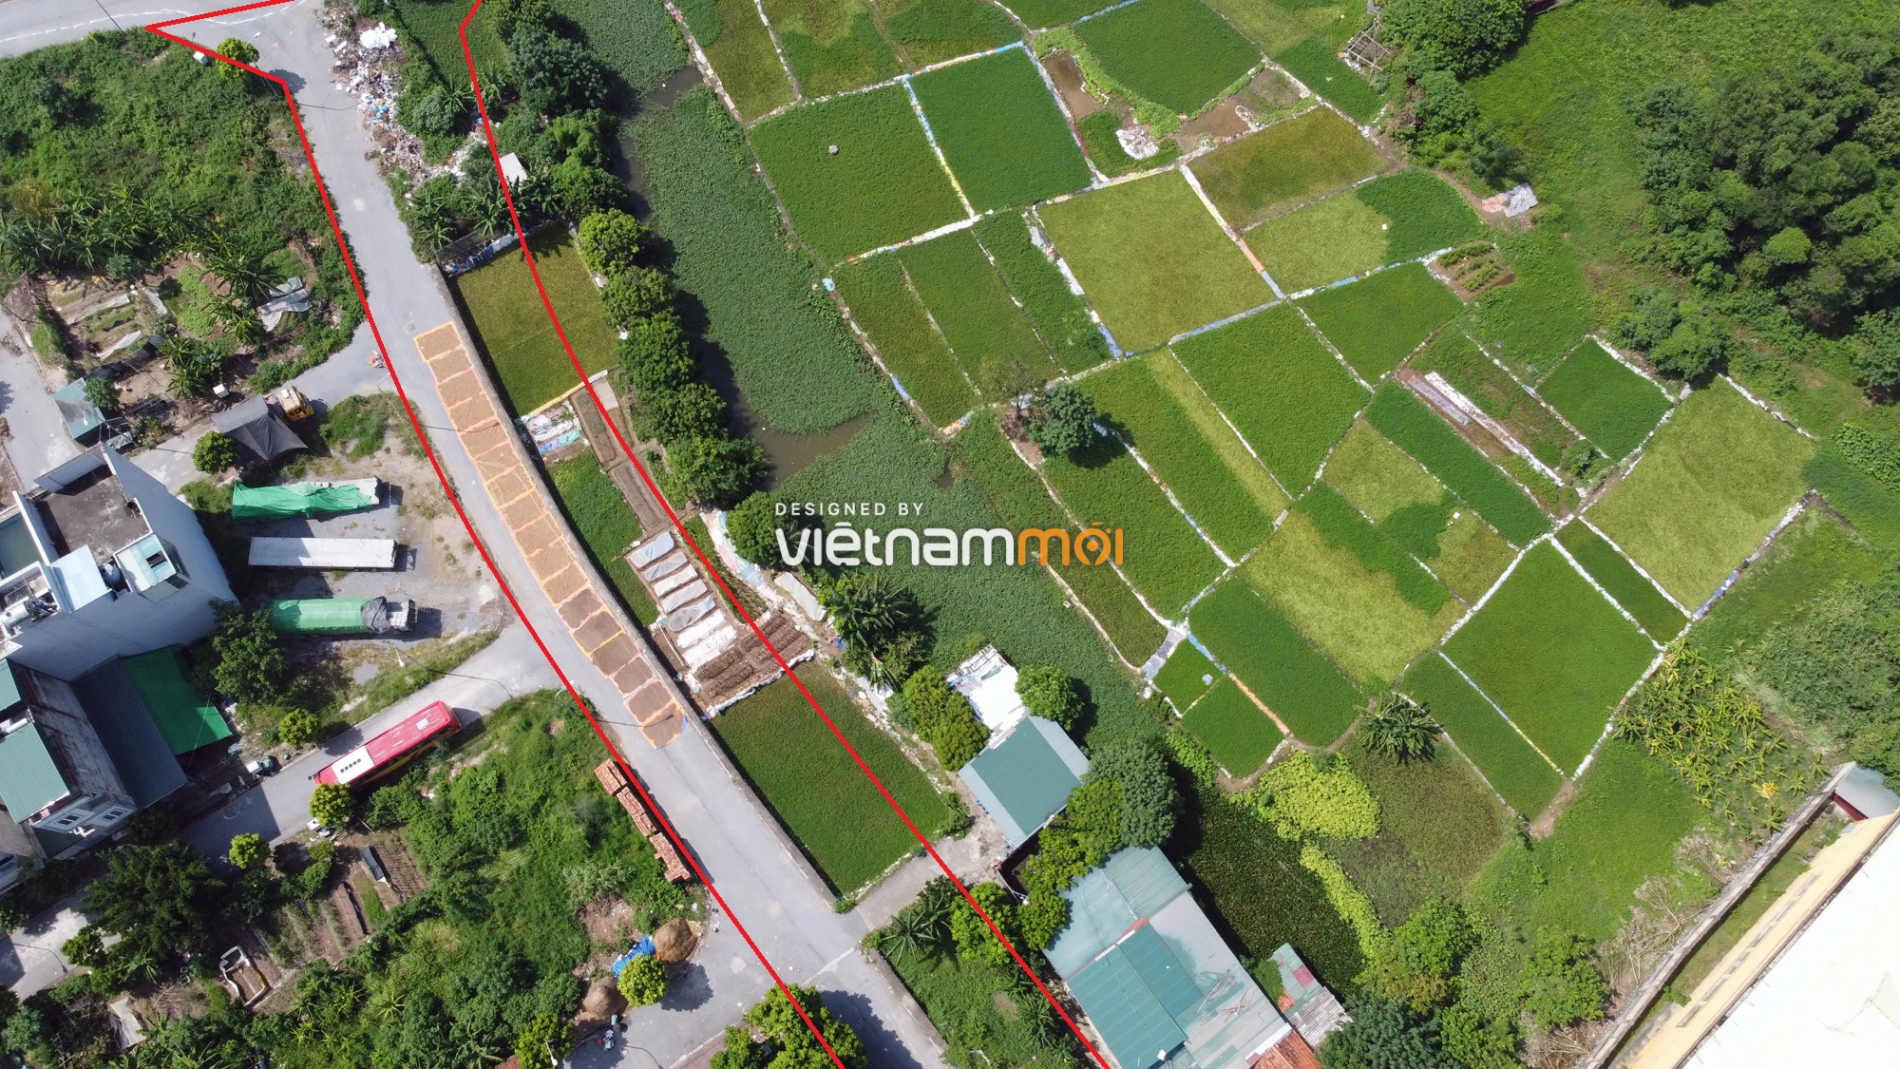 Những khu đất sắp thu hồi để mở đường ở xã Ngọc Hồi, Thanh Trì, Hà Nội (phần 2) - Ảnh 7.